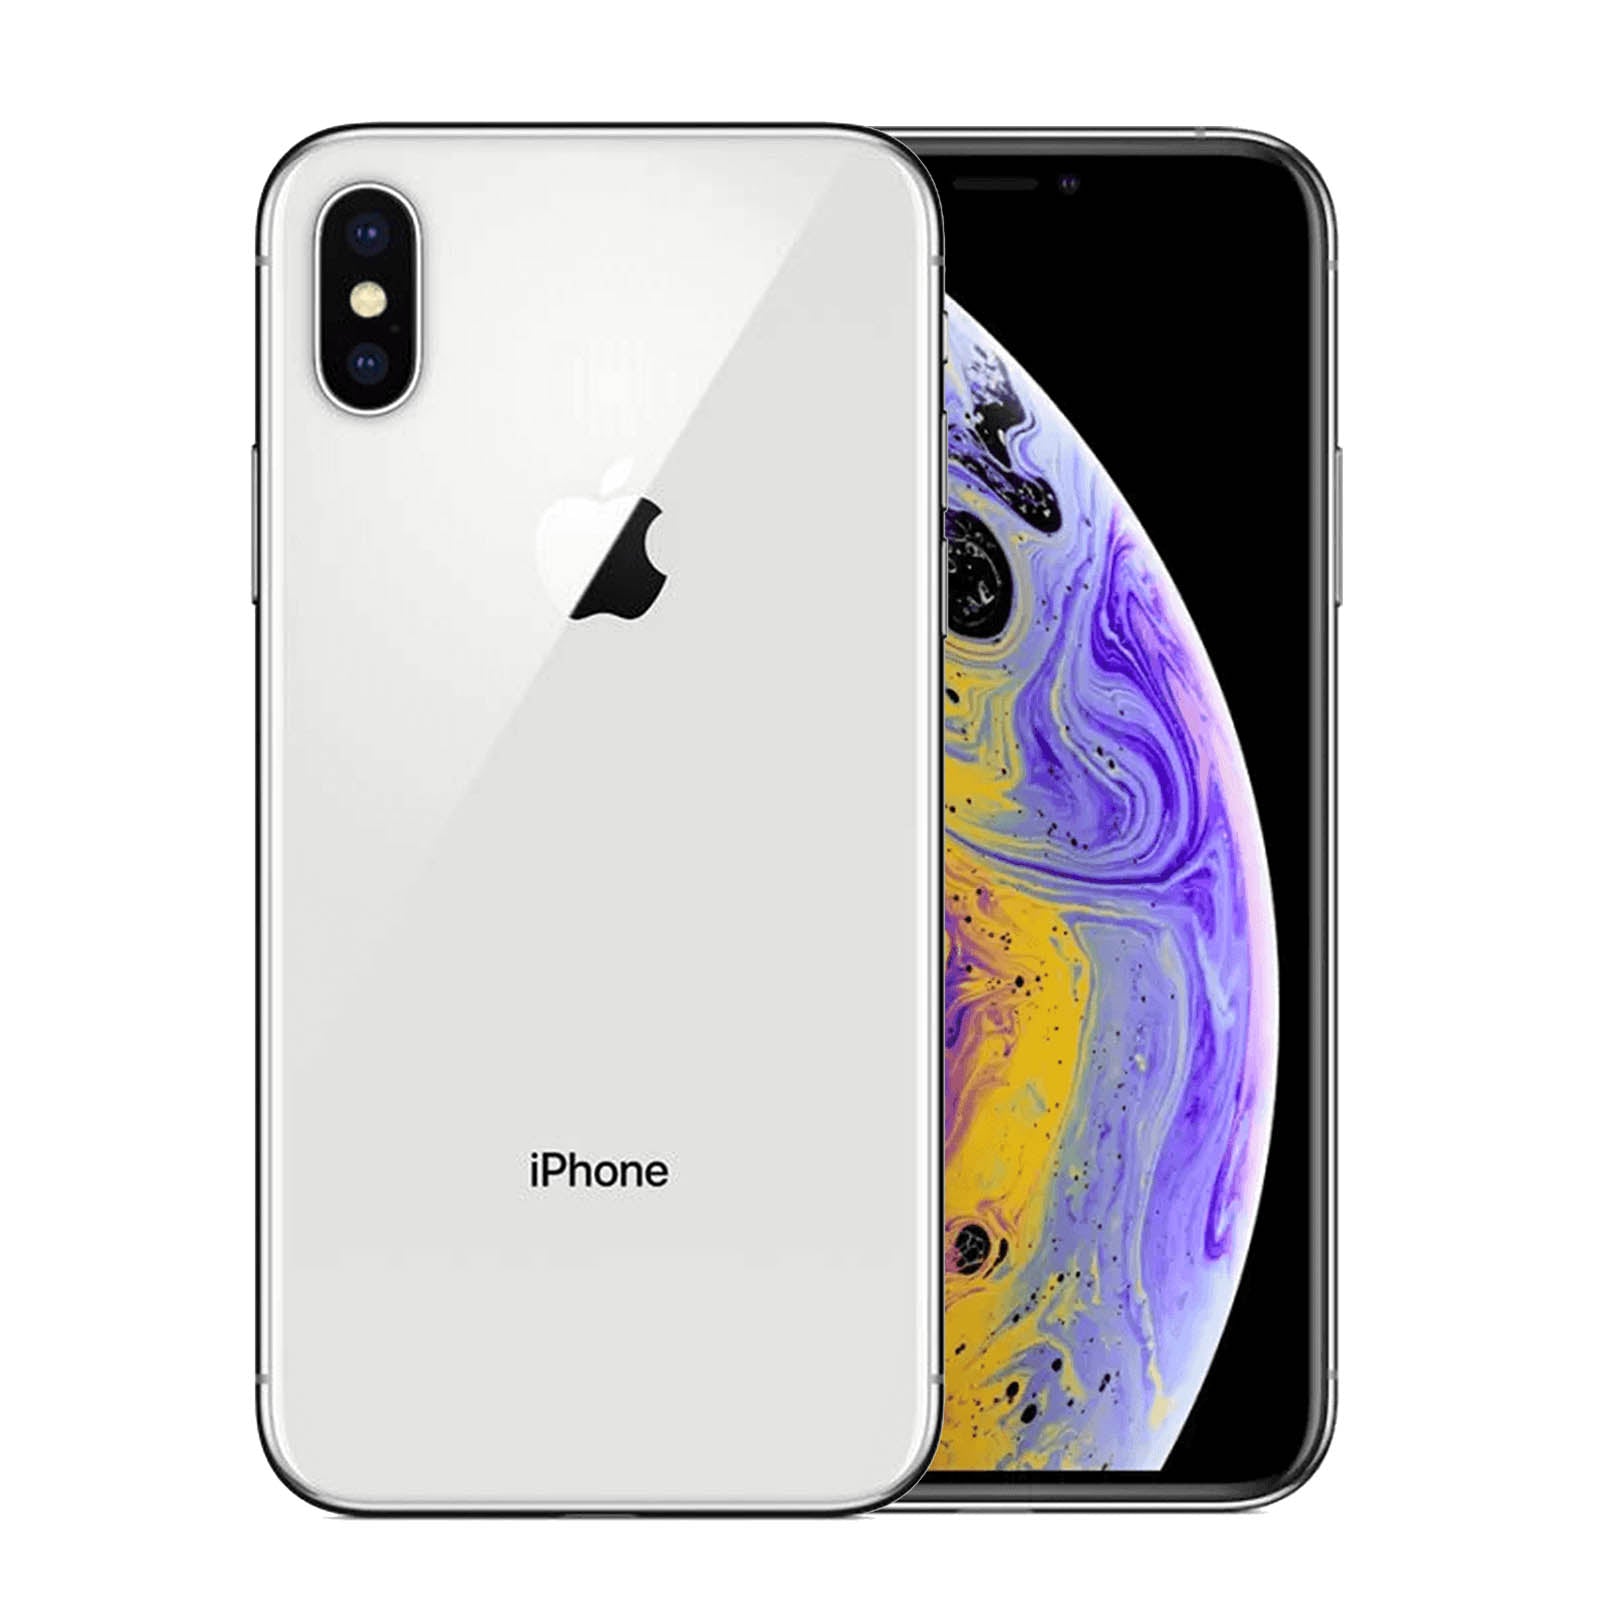 Apple iPhone XS 256GB - Silver – Loop Mobile - AU